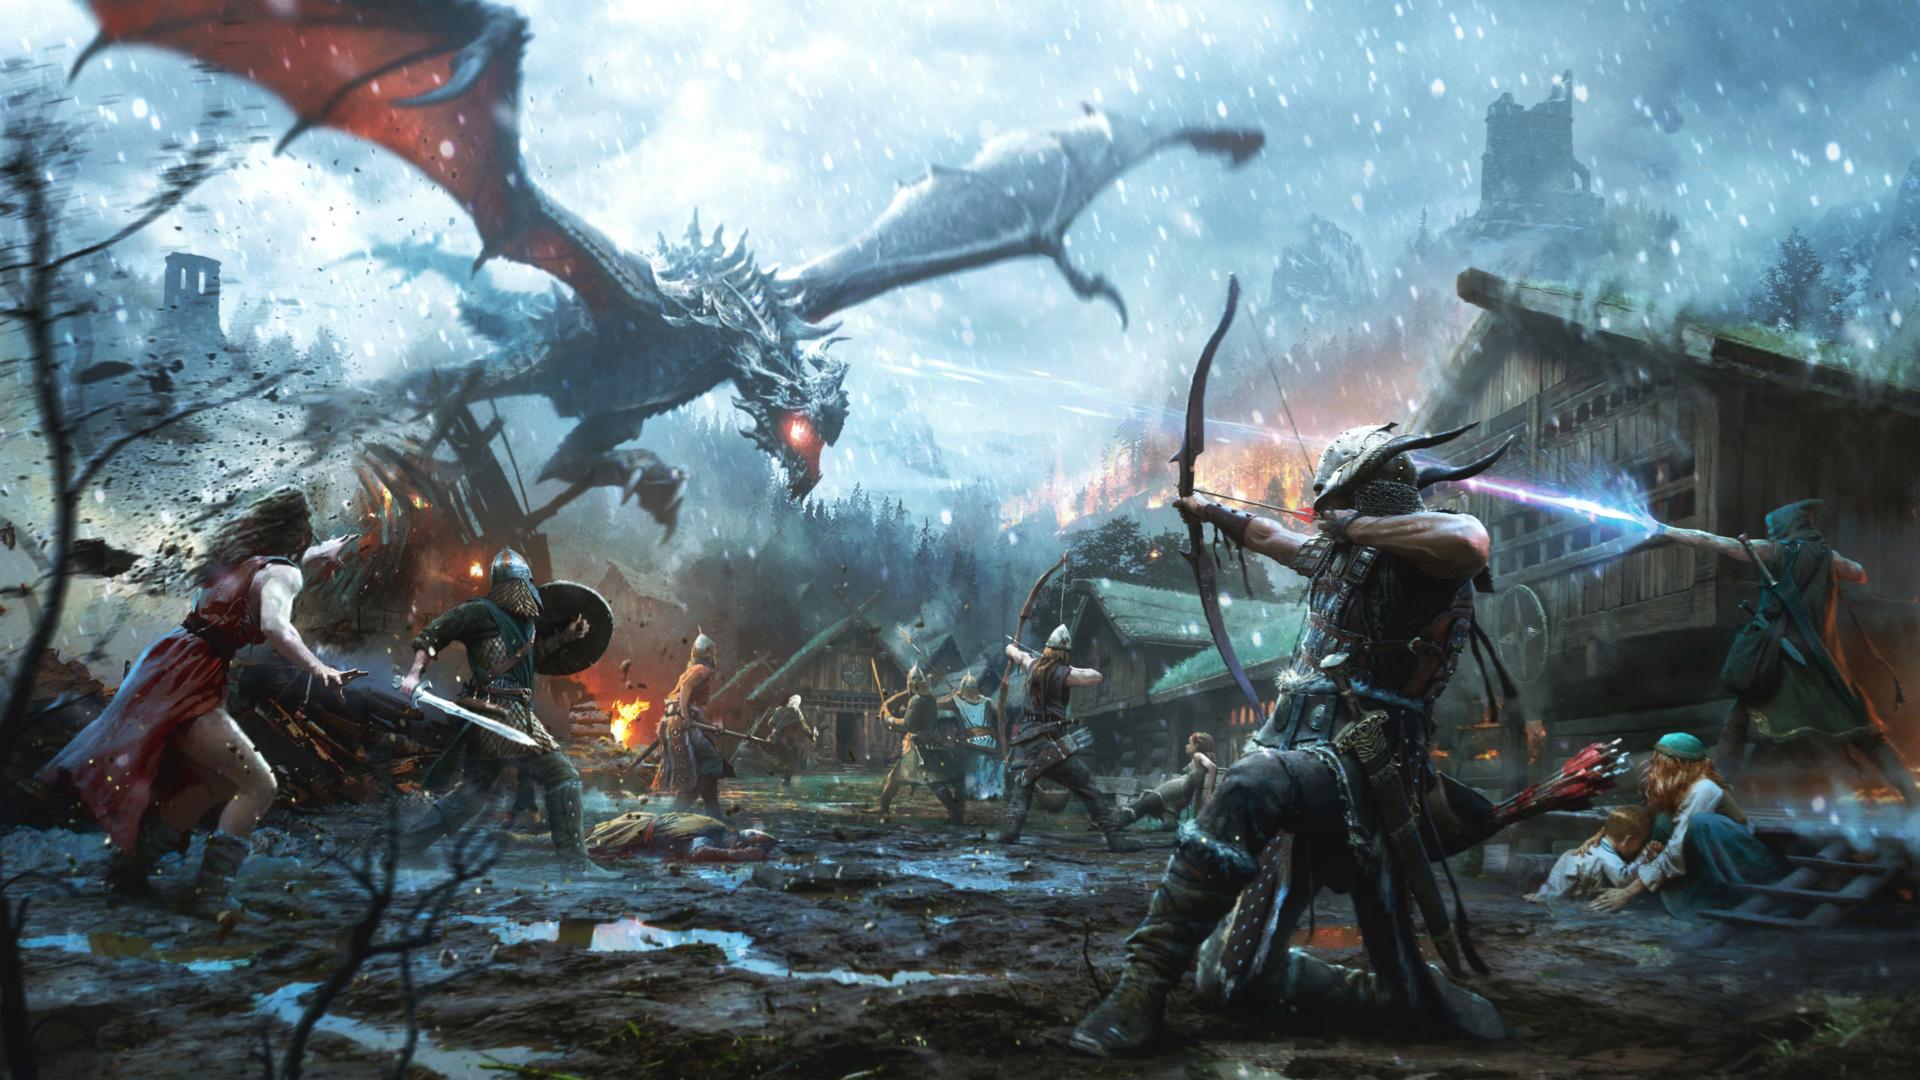 Warriors battle a dragon Wallpaper from The Elder Scrolls